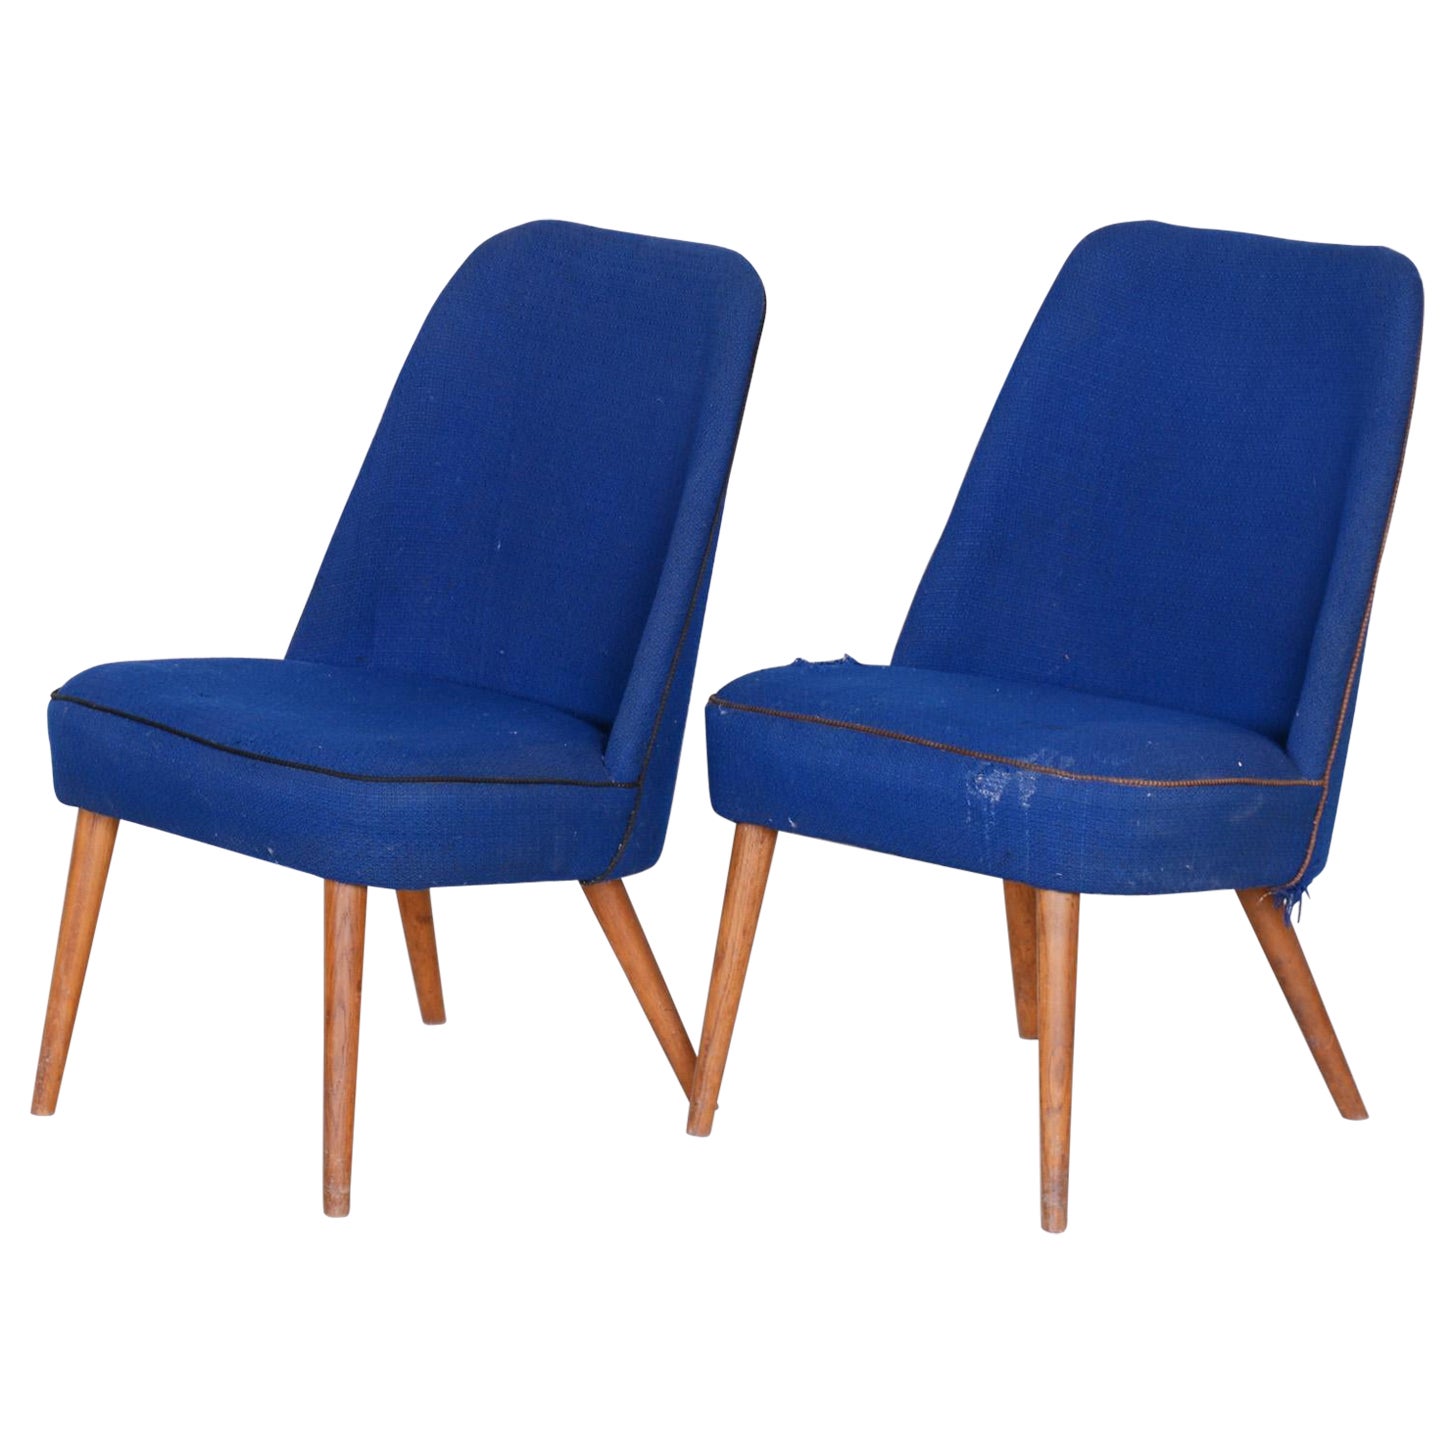 Ensemble de 2 fauteuils bleus du milieu du siècle dernier, fabriqués en Tchèque dans les années 1950. Frêne, original